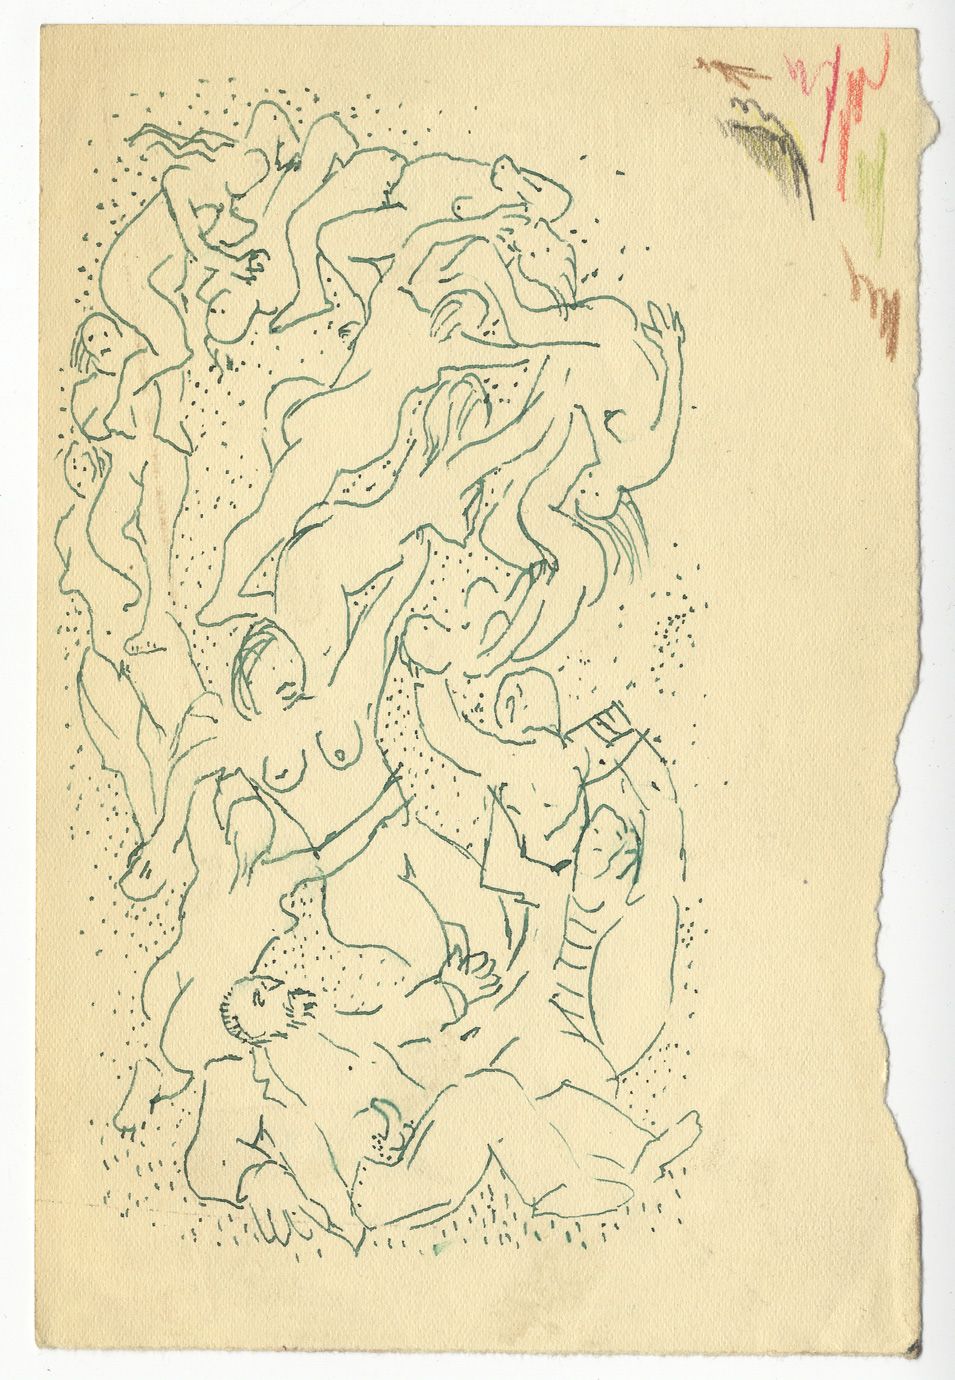 Null 克罗地亚。怪诞的人物，大约在1950年。4幅水墨画，大小不一，其中3幅有一个未破译的签名。